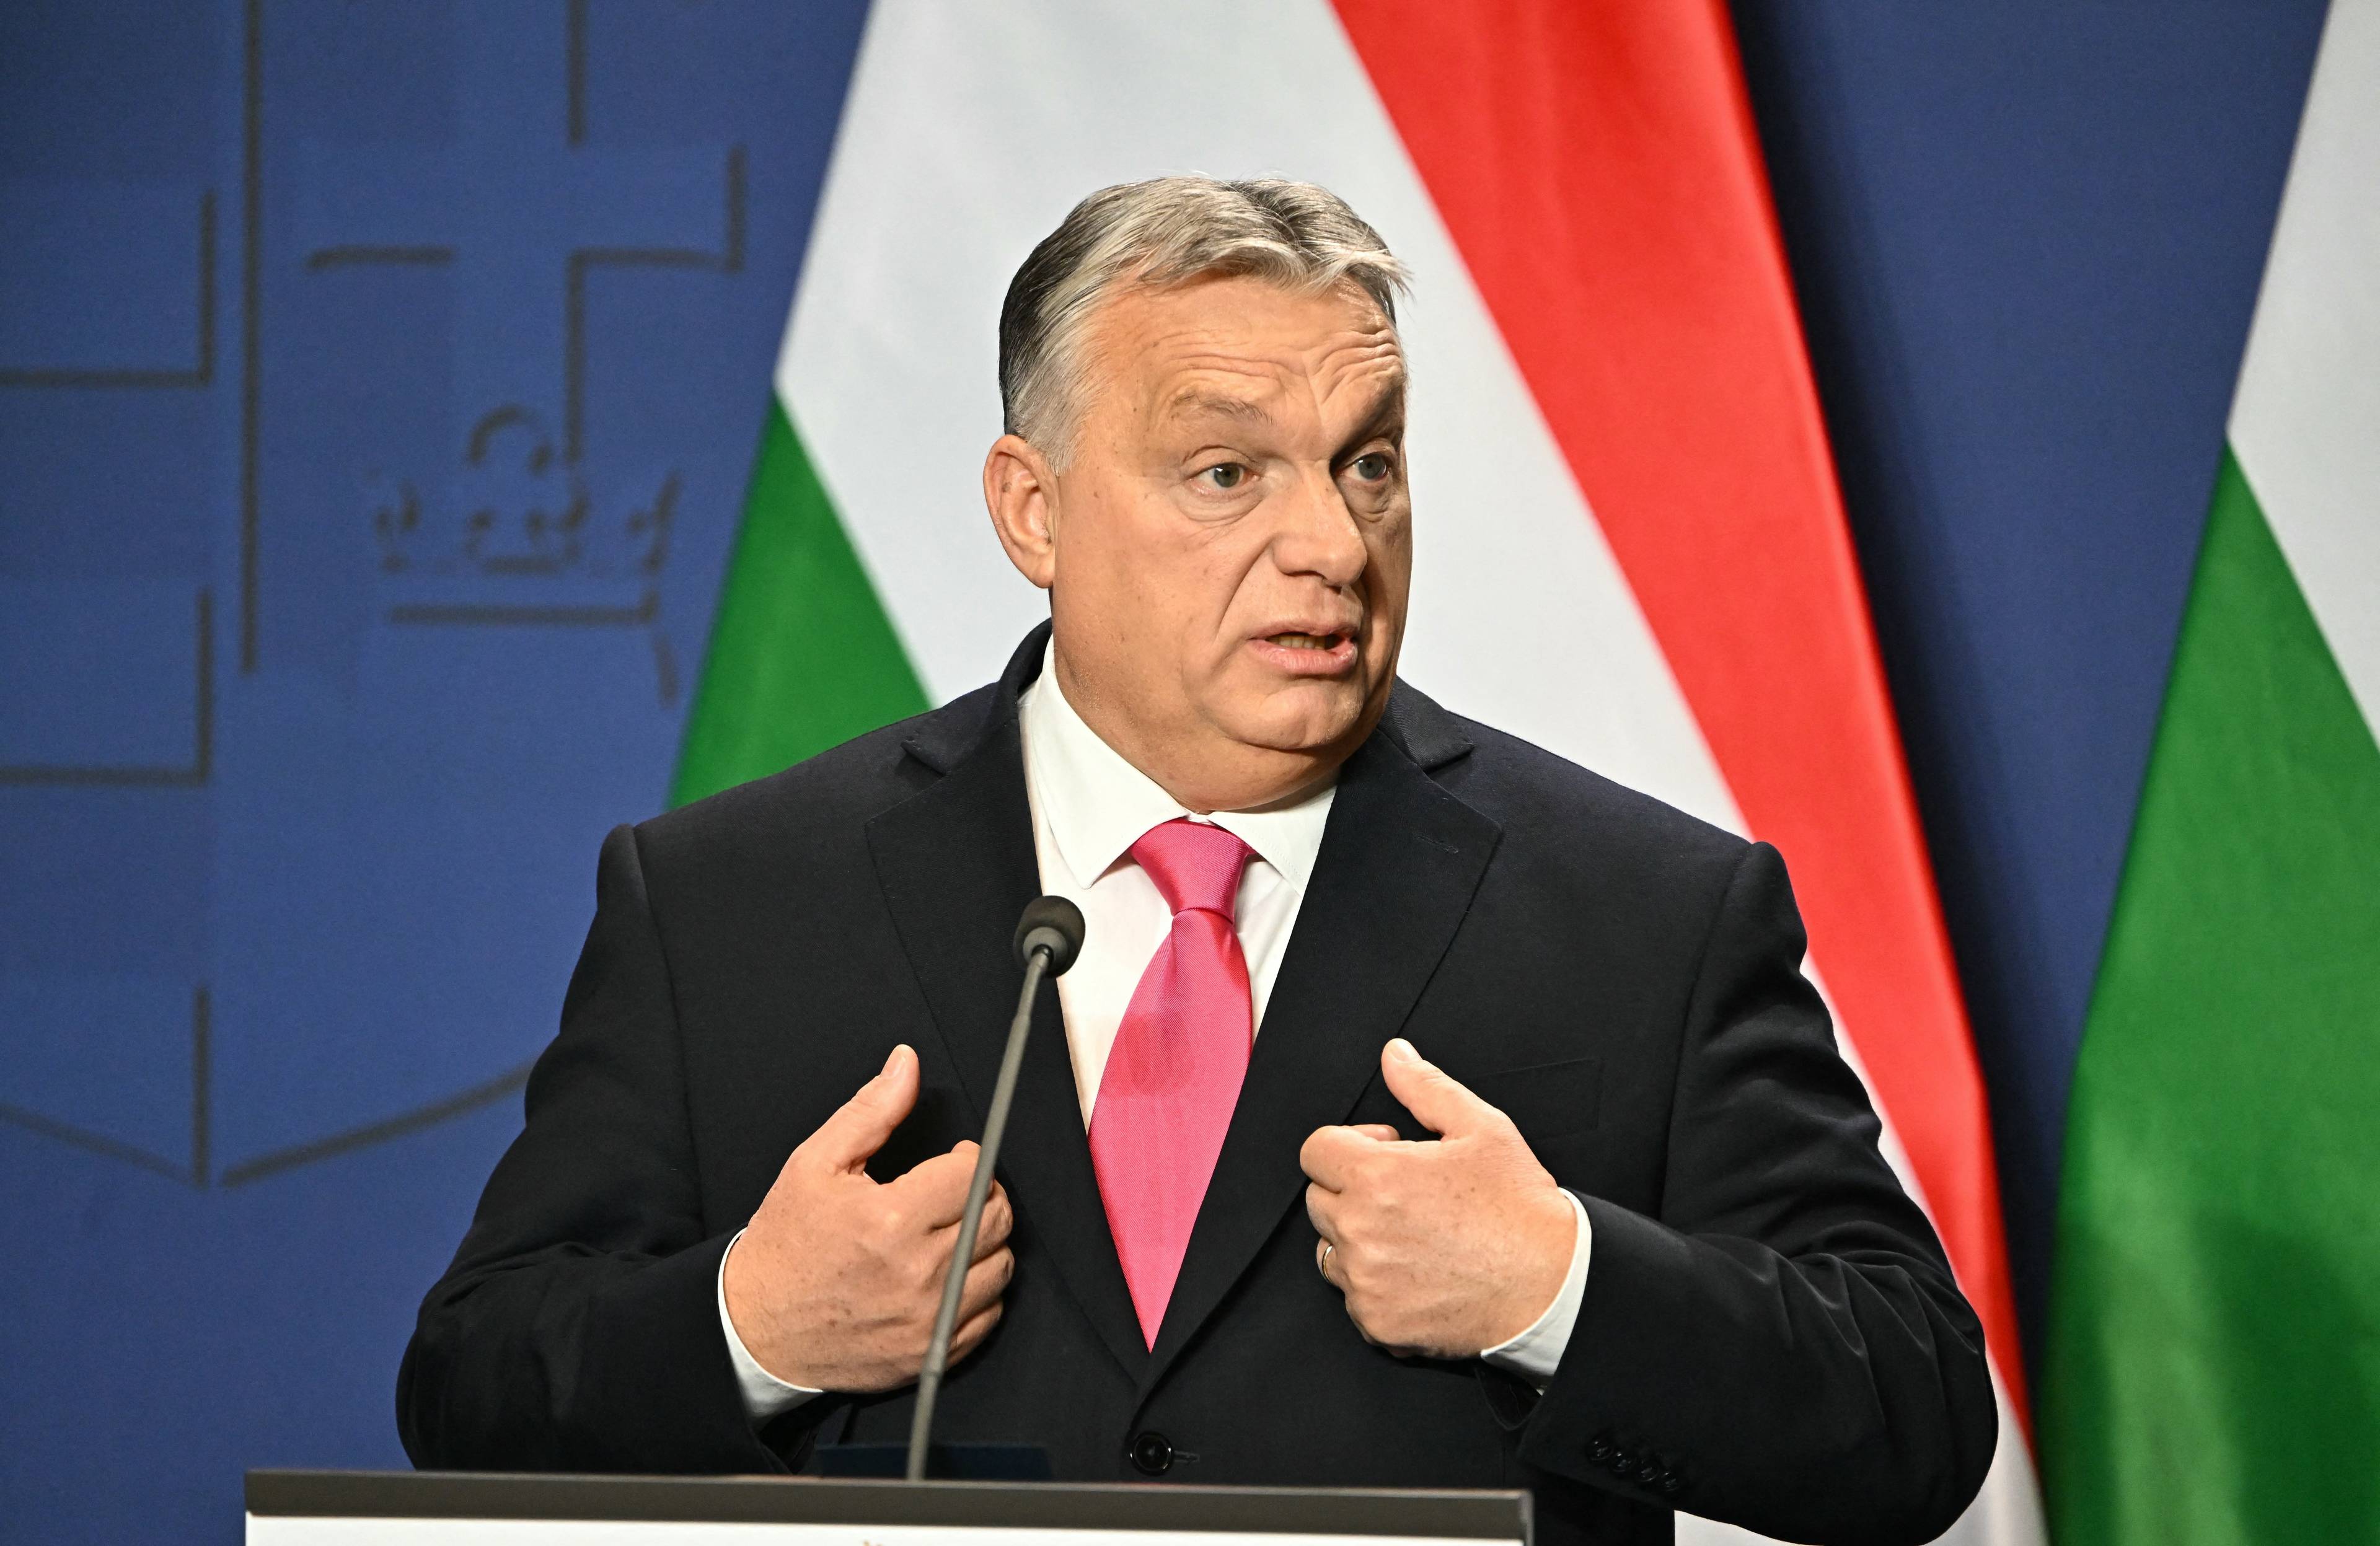 Viktor Orban bardzo zdziwiony na tle węgierskich flag